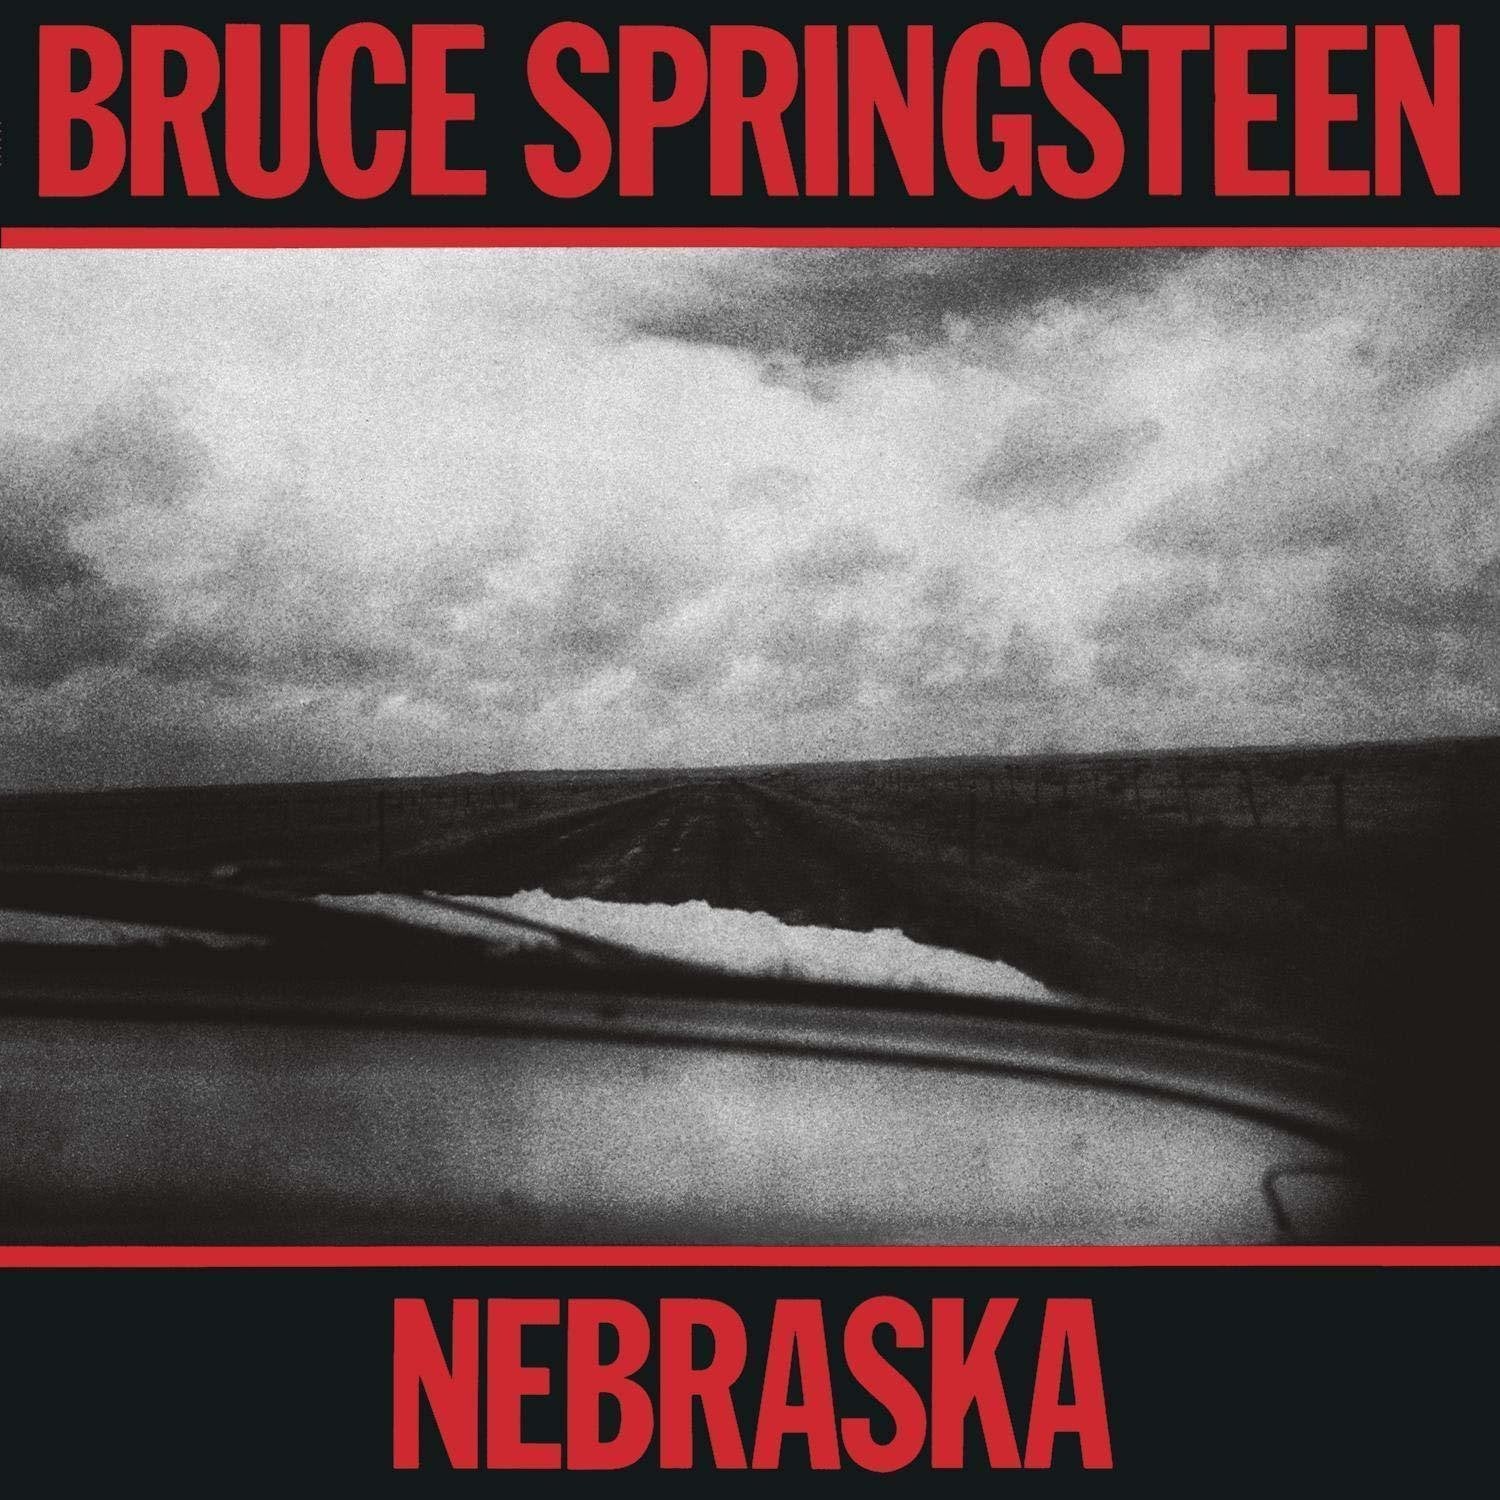 Bruce Springsteen - Nebraska - LP - 180g Vinyl